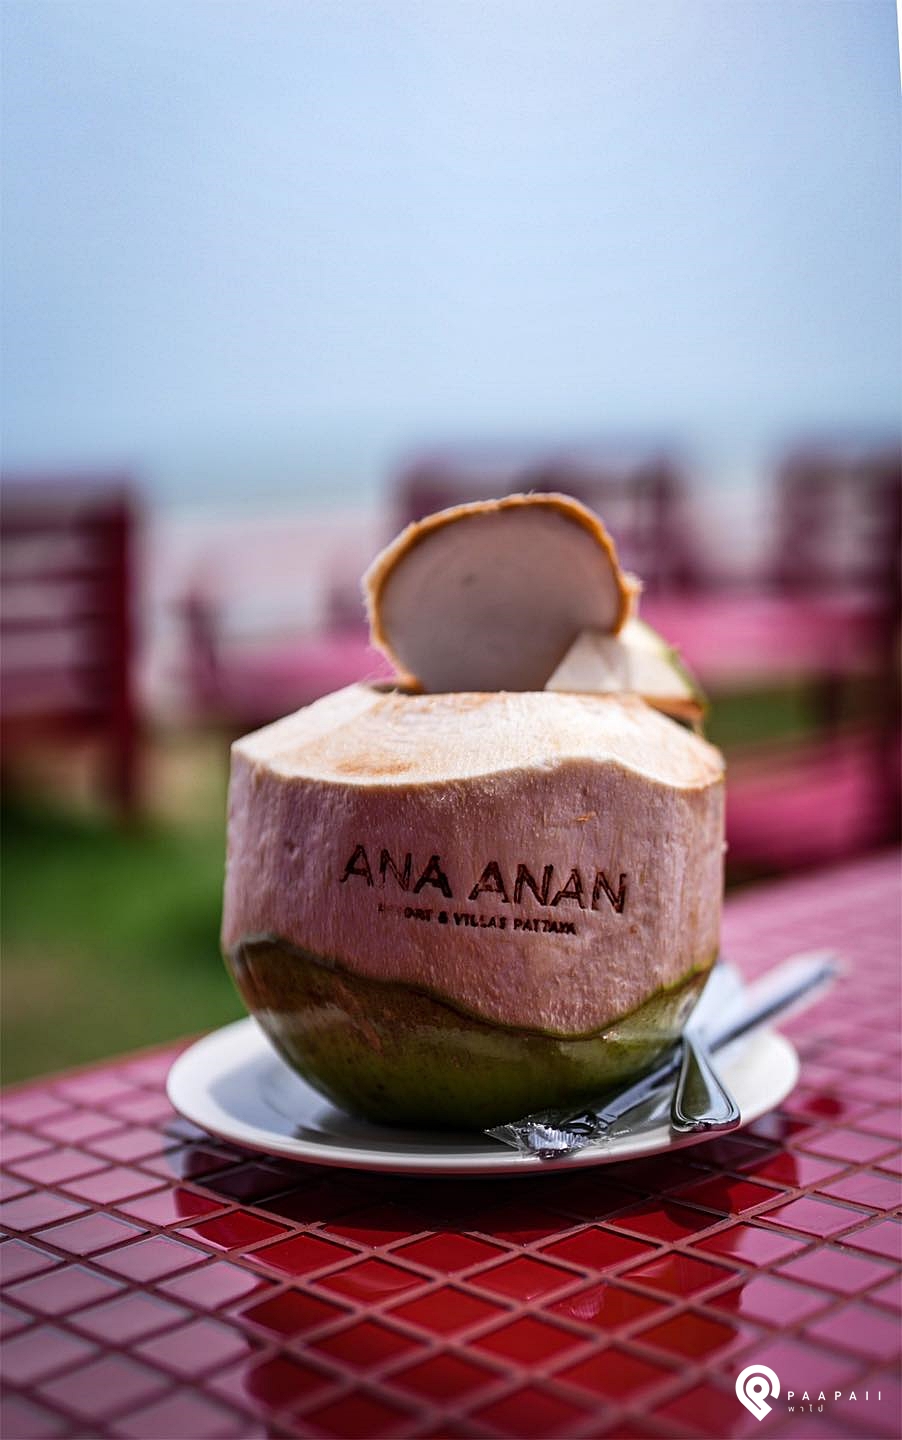 รีวิวบีชบาร์ลับๆ "Under the Sun" ใน ANA ANAN Resort & Villas Pattaya